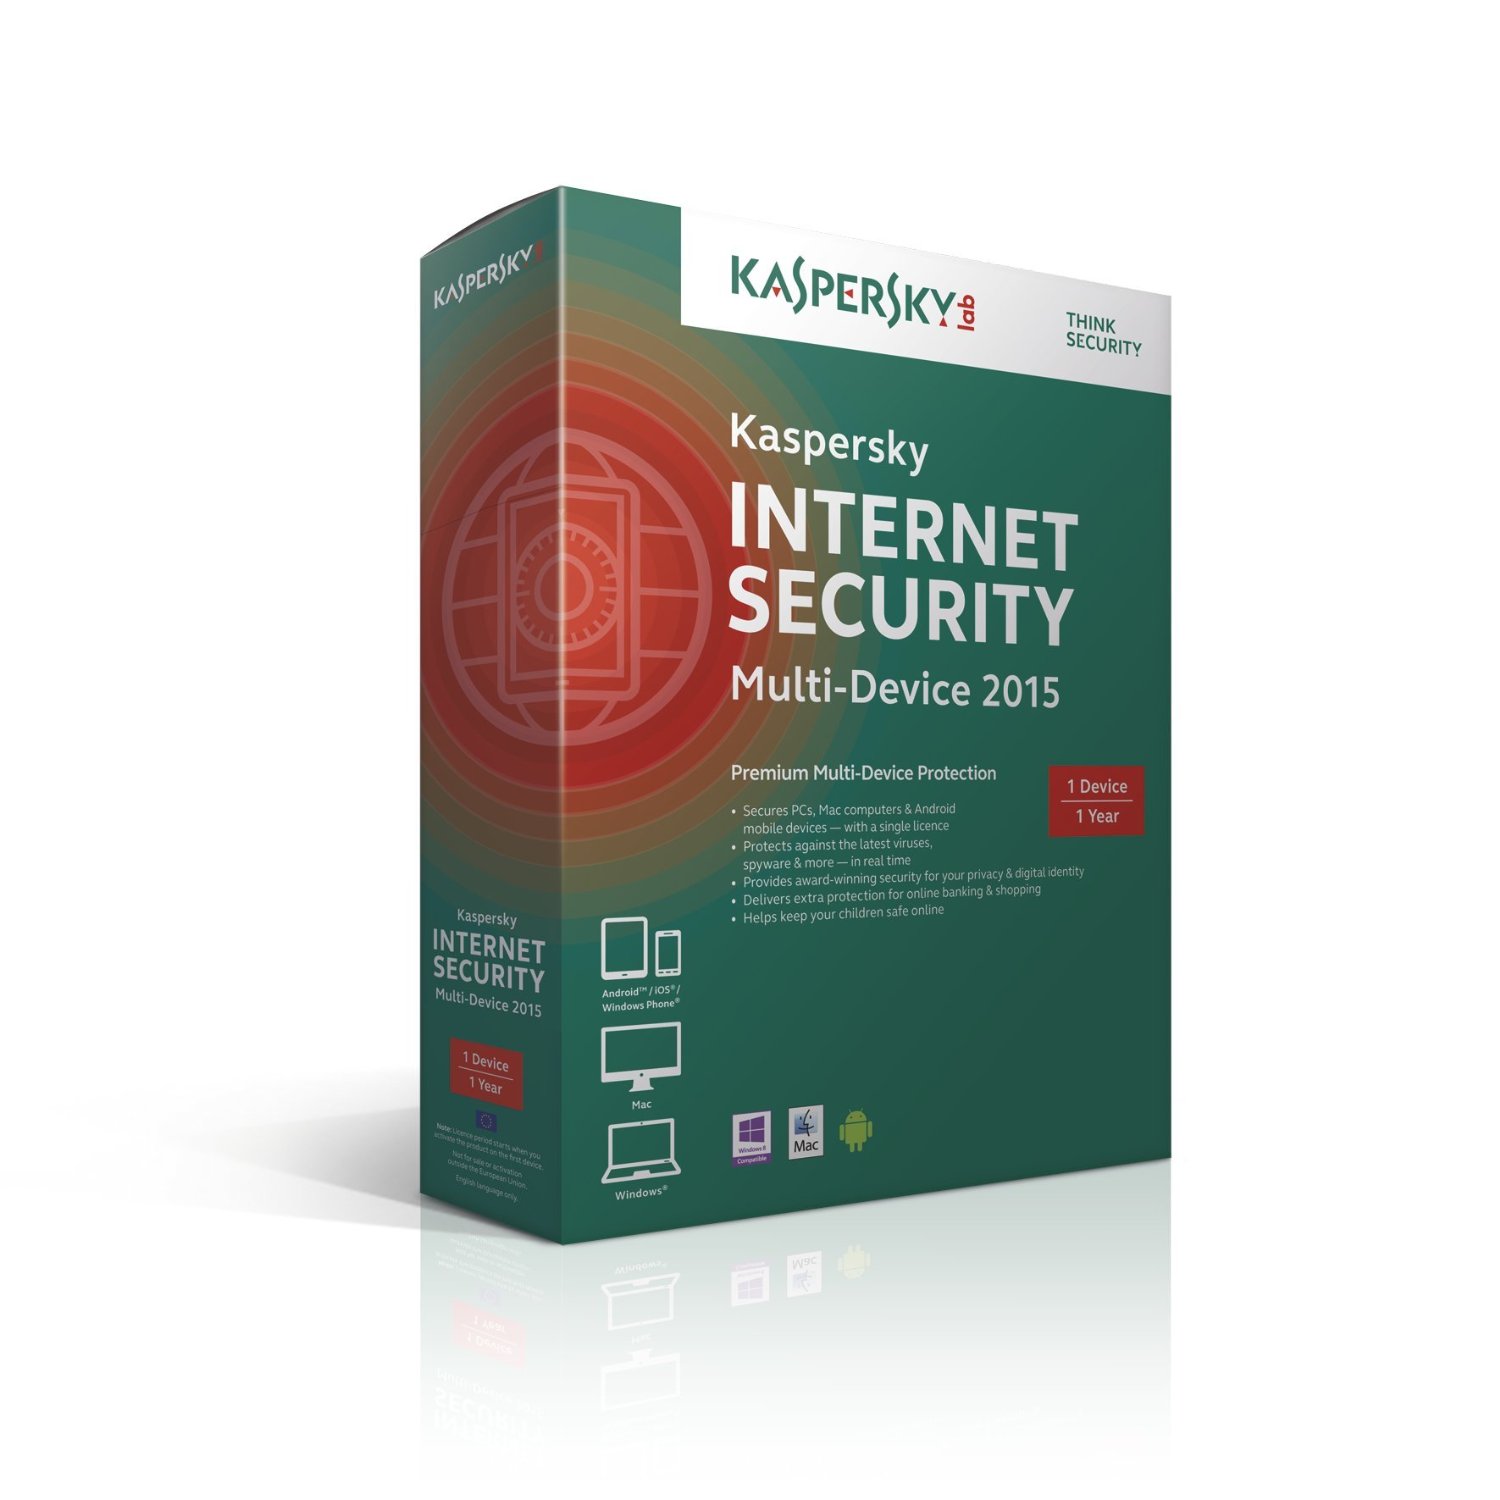 Kaspersky internet security app download